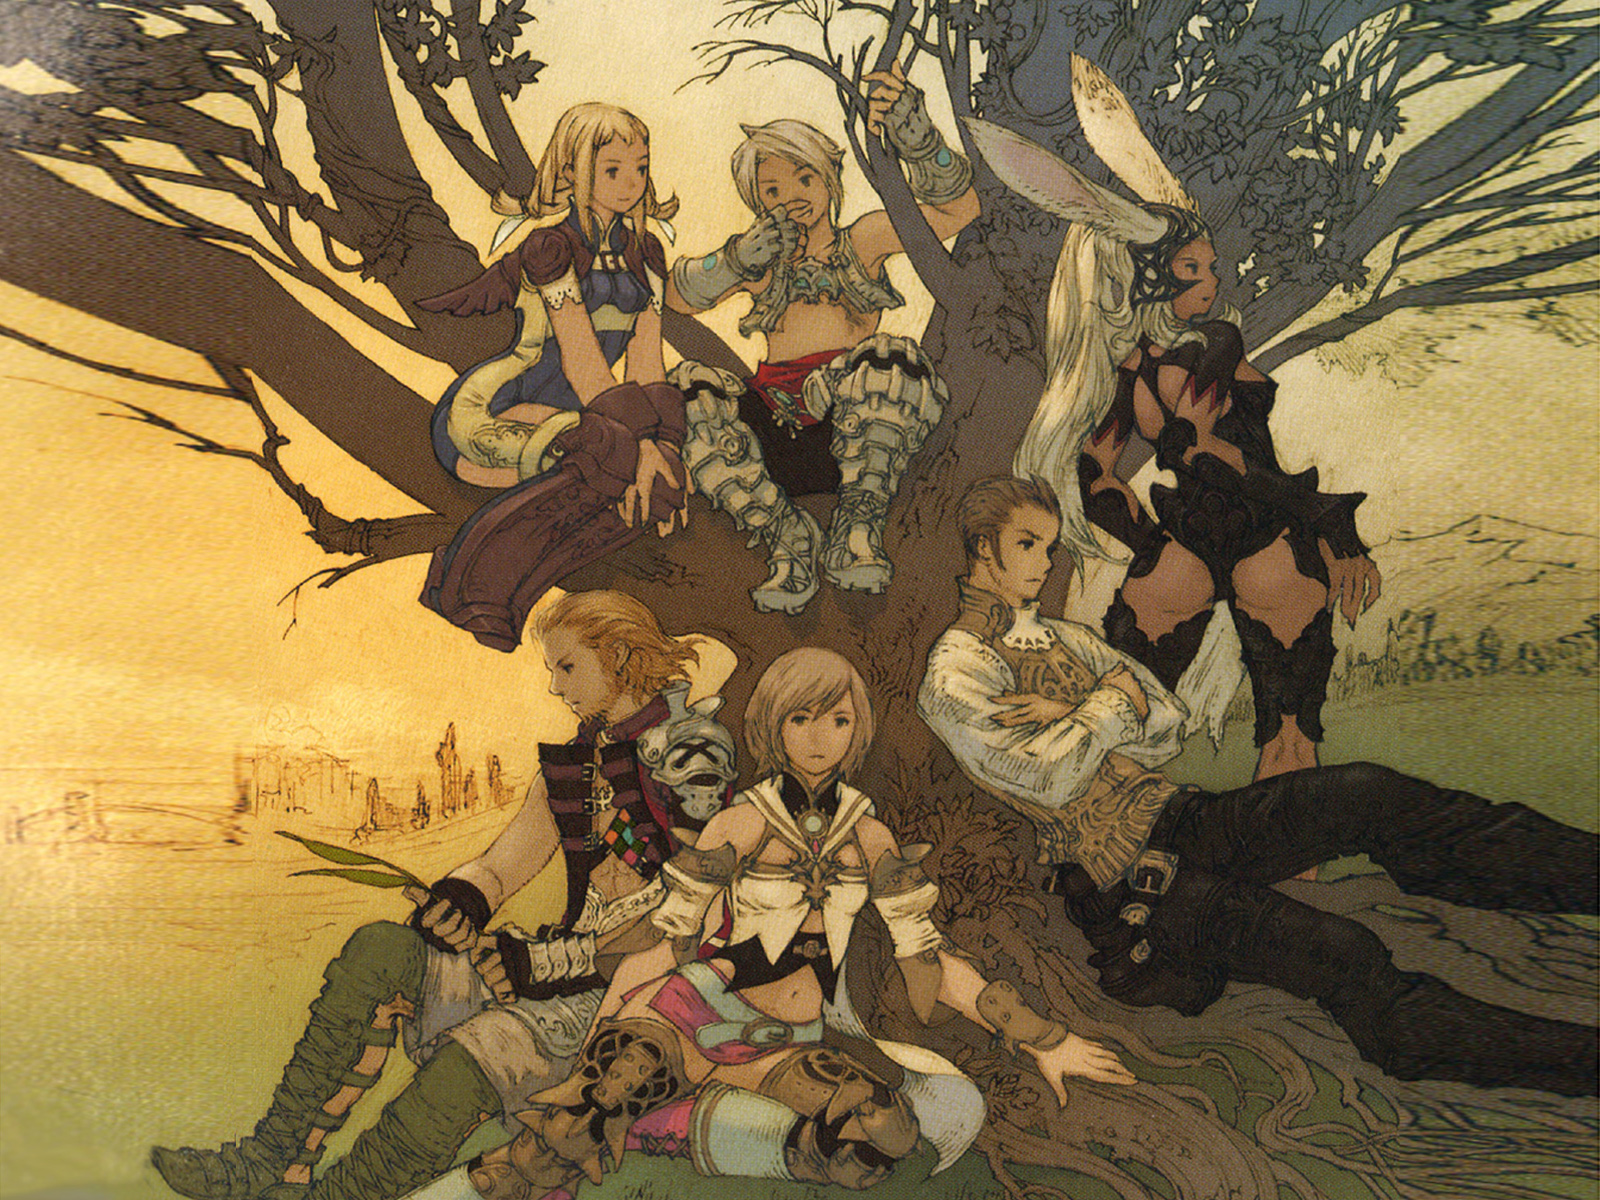 Популярні заставки і фони Final Fantasy Xii на комп'ютер